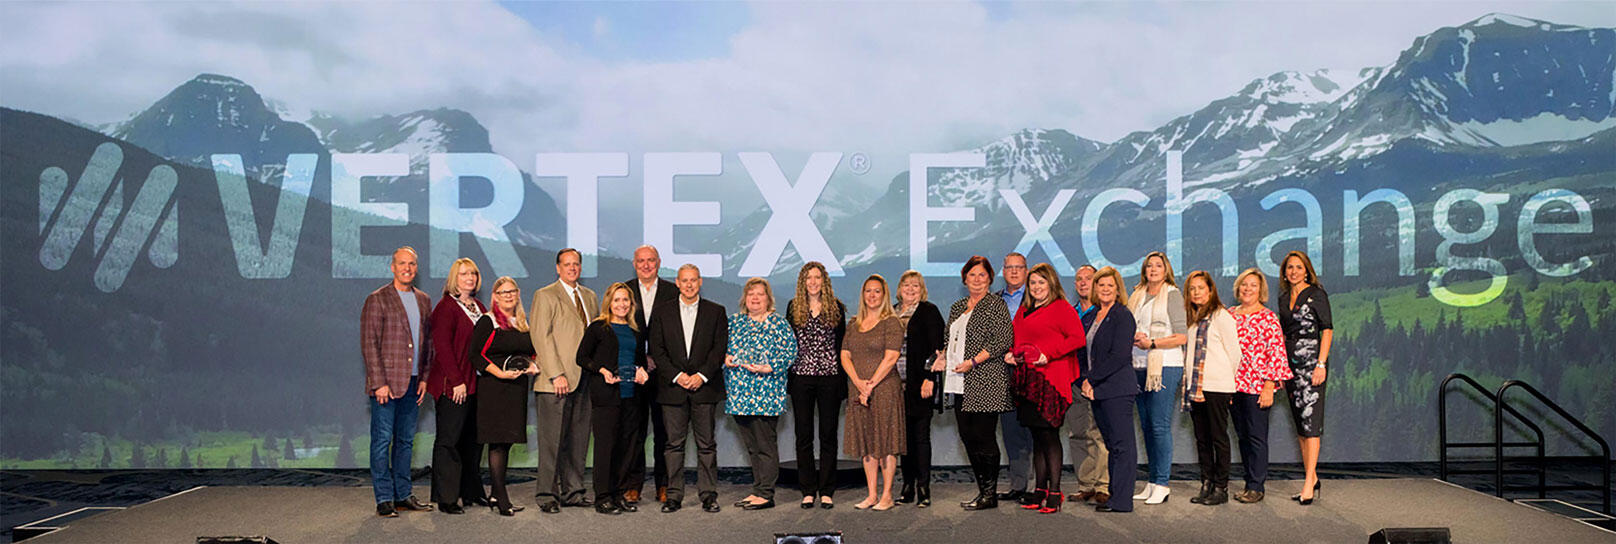 Vertex, Inc. is a 2019 Innovation Awards winner.